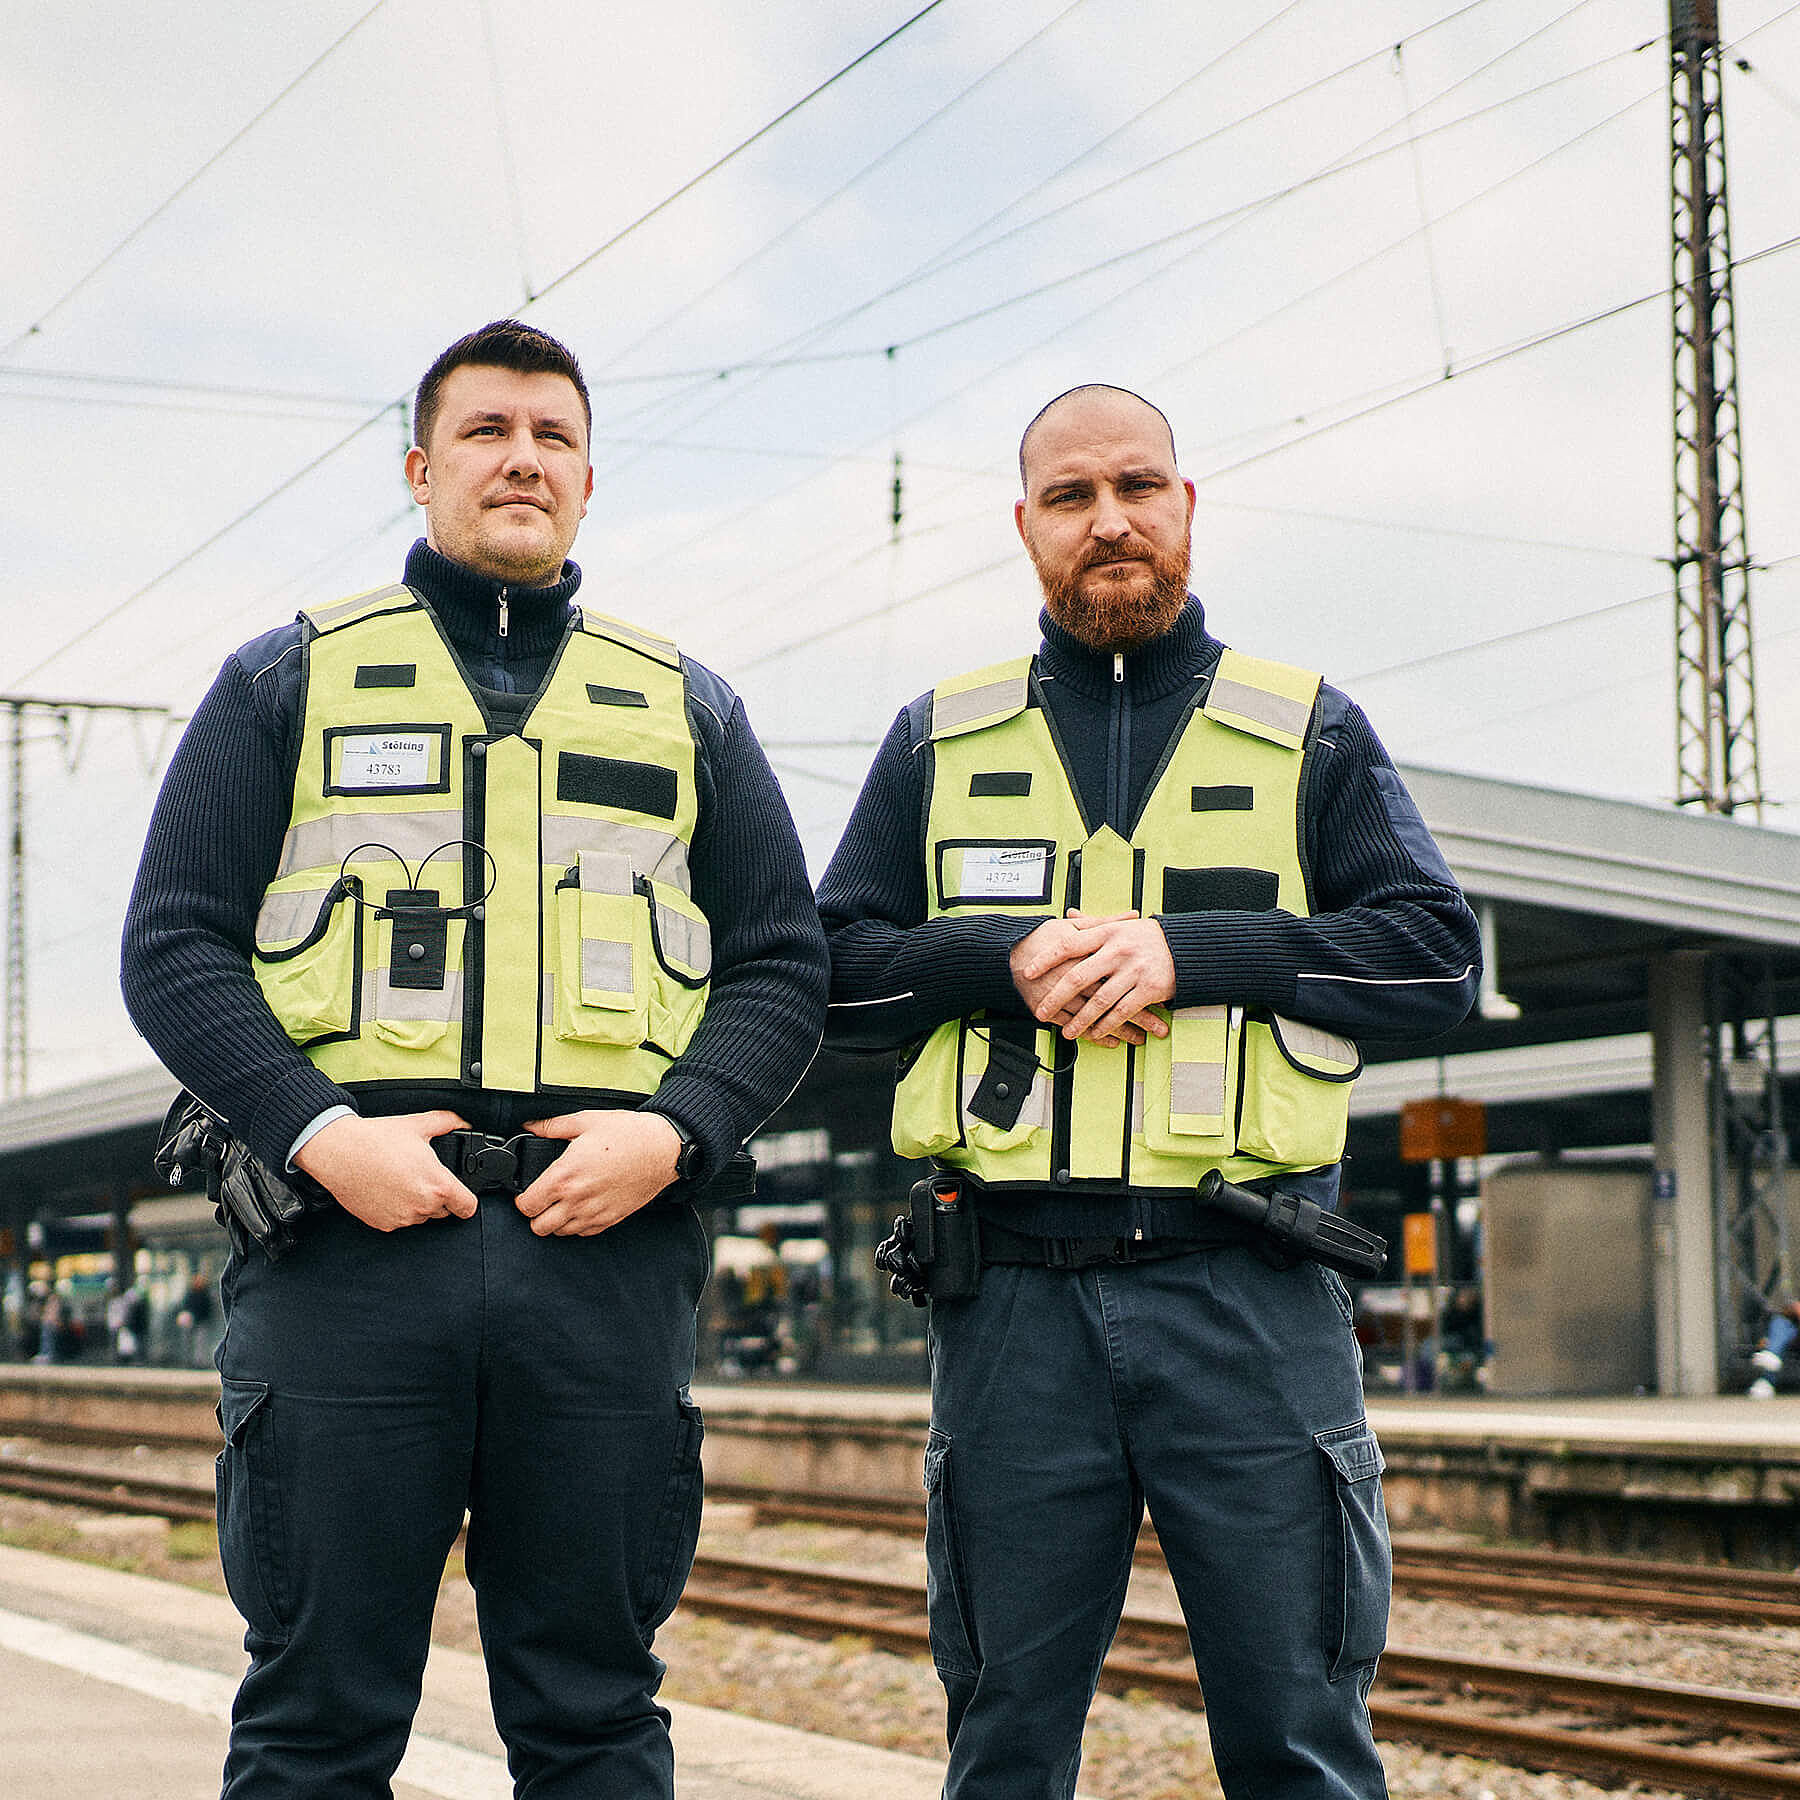 Zwei Männer in gelben Sicherheitswesten stehen an einem Bahnsteig und schauen in die Kamera.